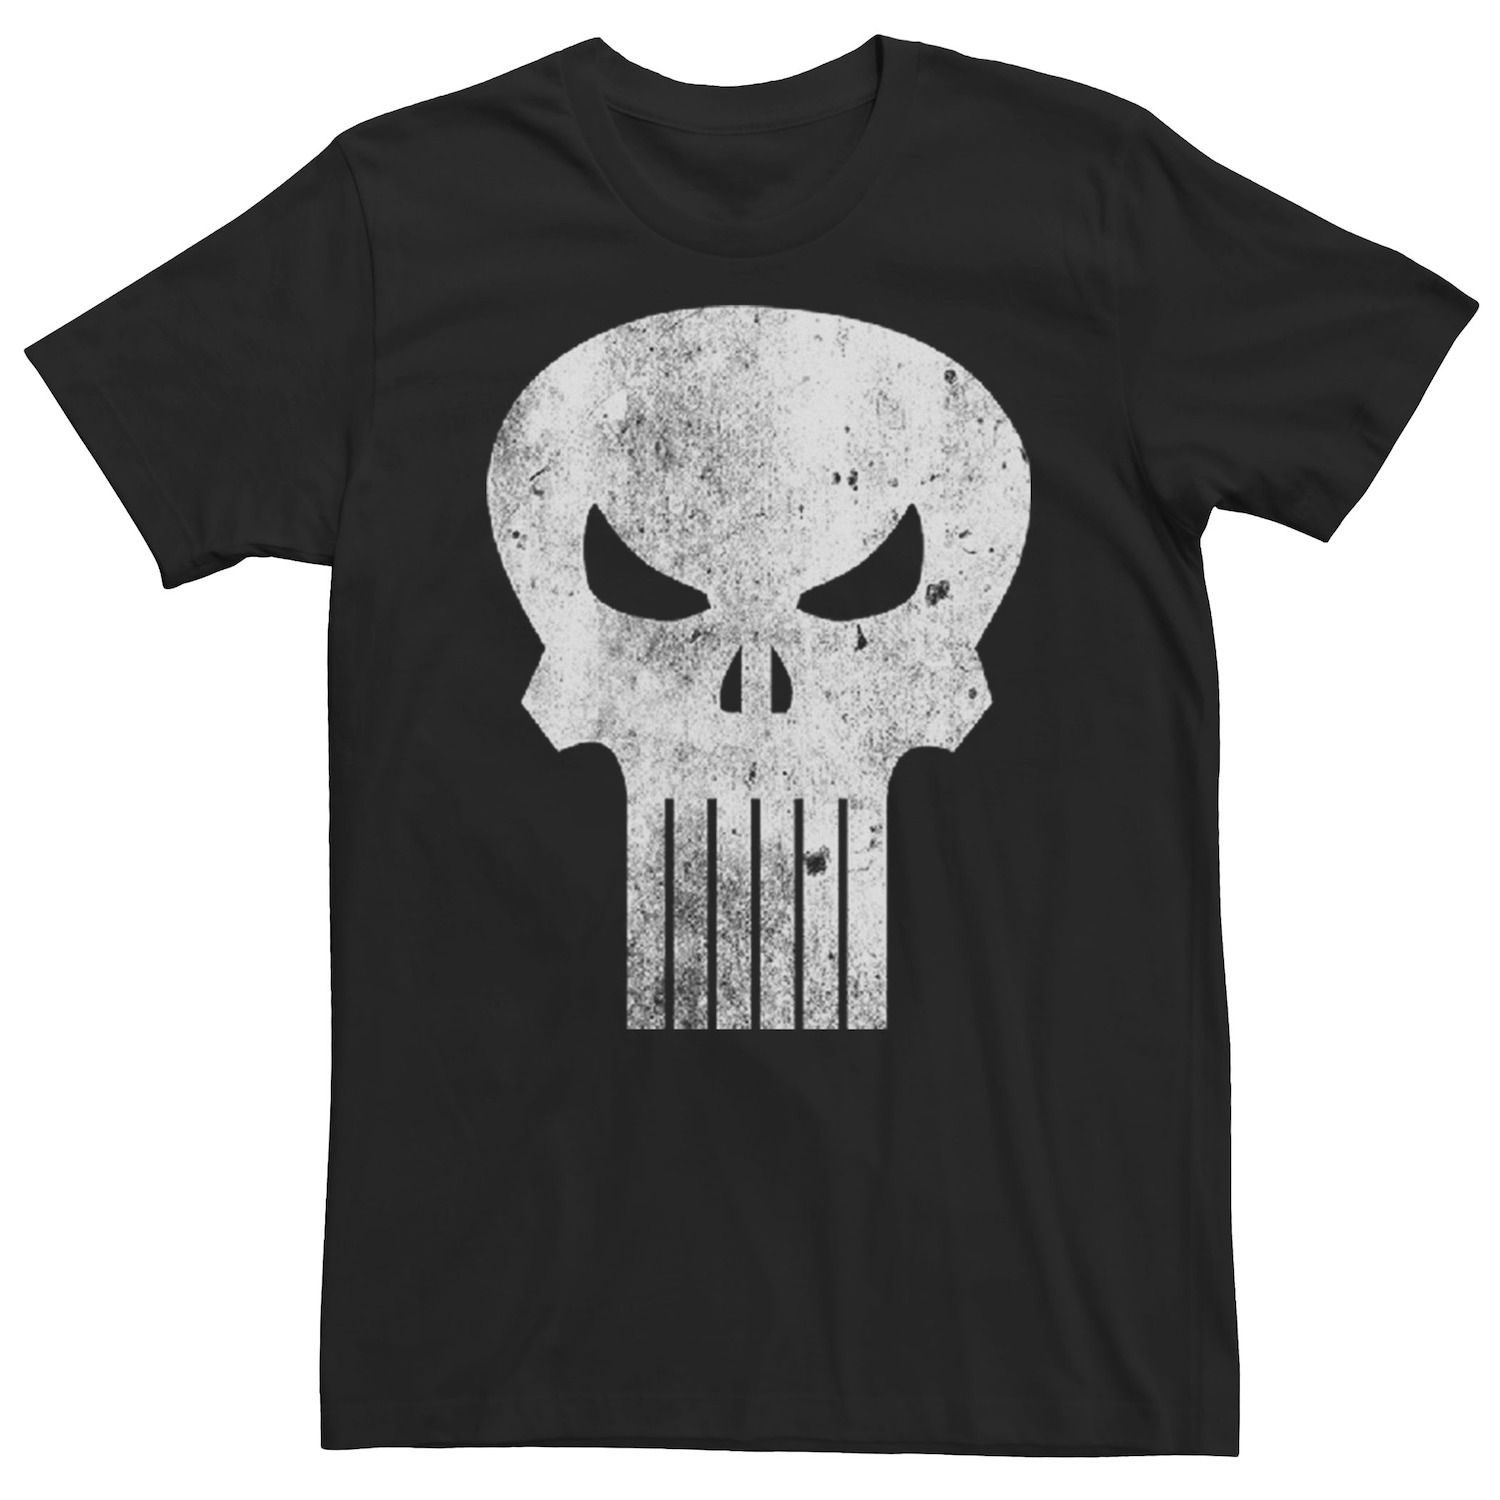 Мужская классическая футболка с логотипом The Punisher Marvel цена и фото